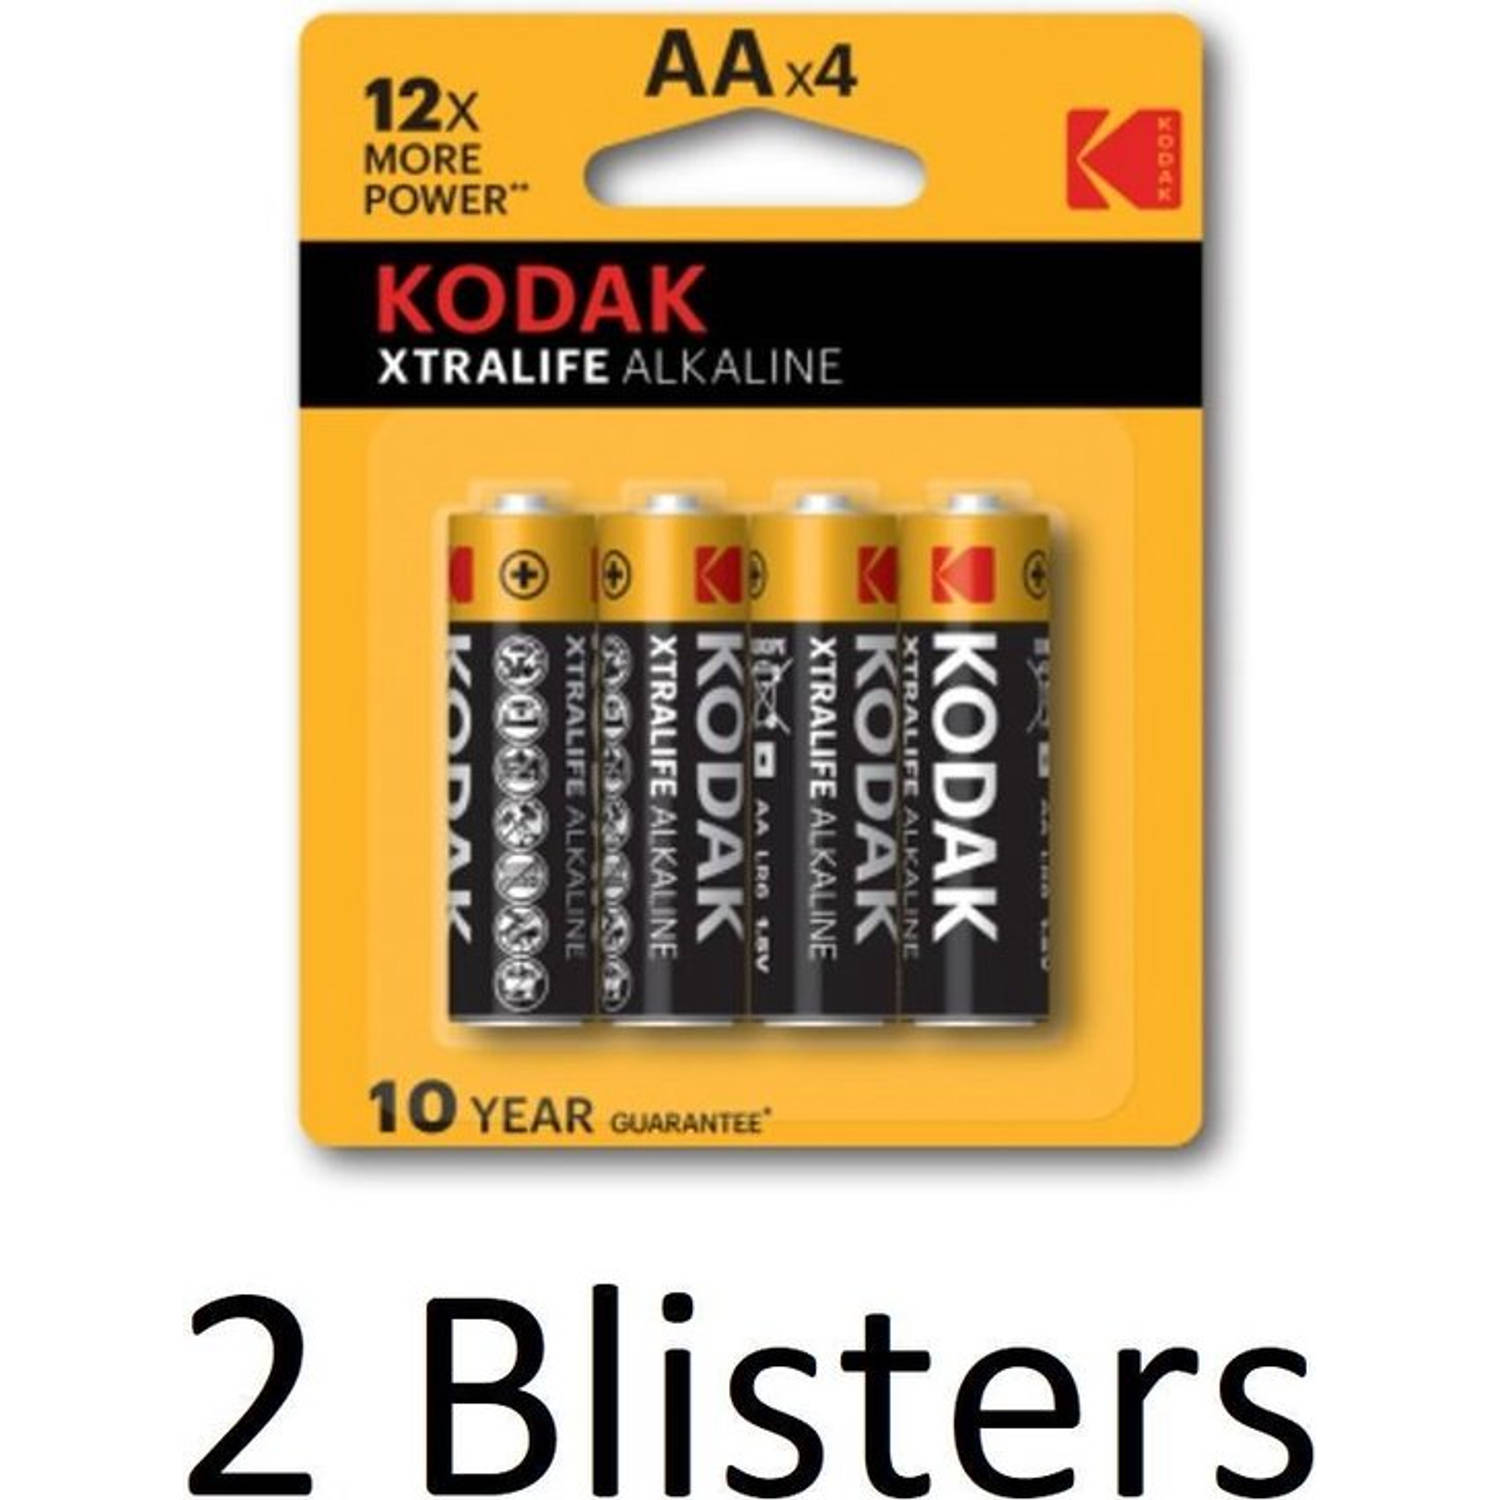 8 Stuks (2 Blisters a 4 st) Kodak Xtralife AA Alkaline Batterijen